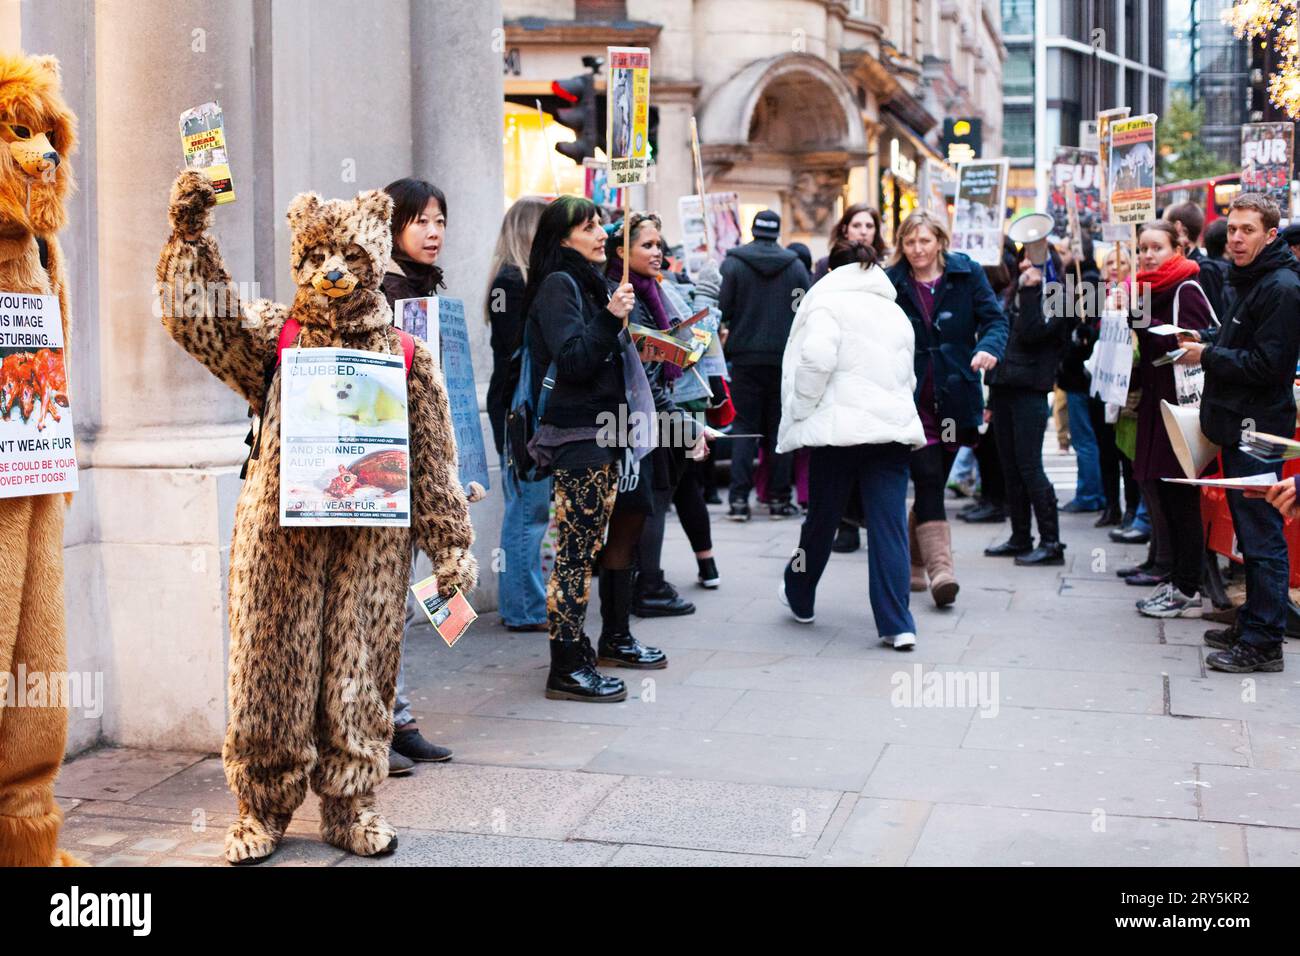 Manifestation contre les droits des animaux contre la fourrure devant Harvey Nichols Londres 30 novembre 2013 - activistes en costume d'ours Banque D'Images